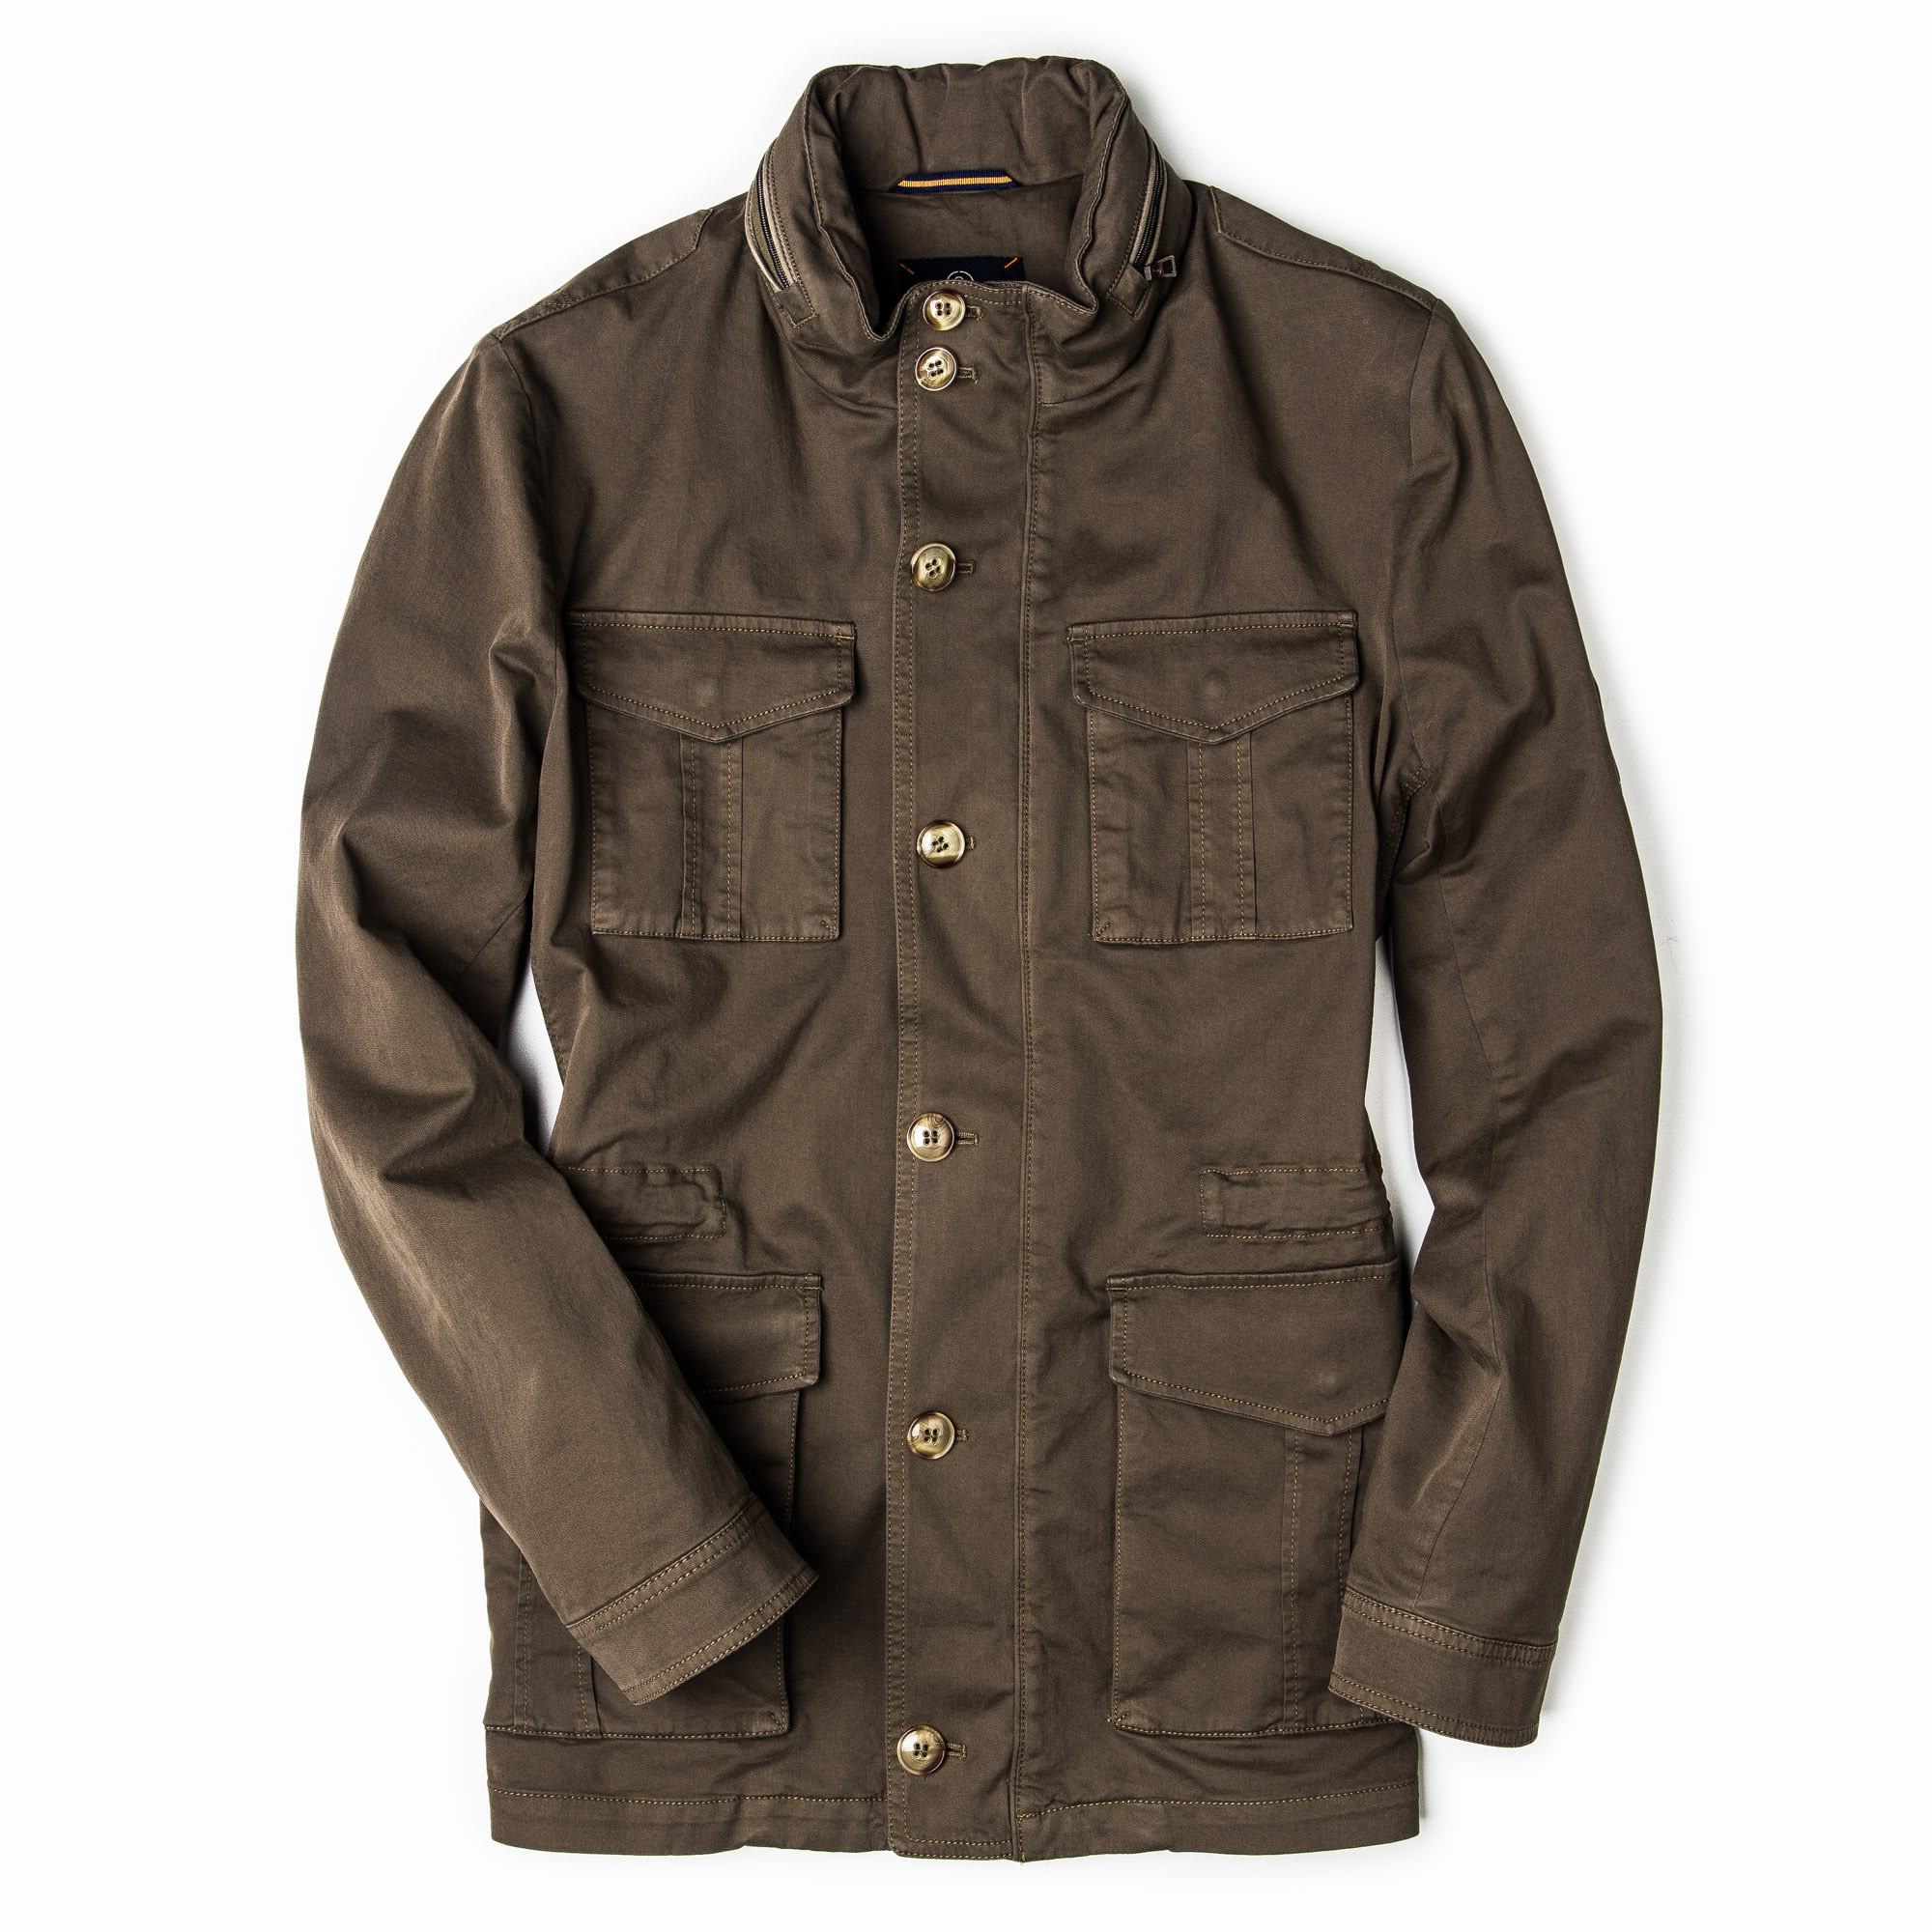 Schneiders - Men's Sorrento Garment Dyed Jacket - Olive